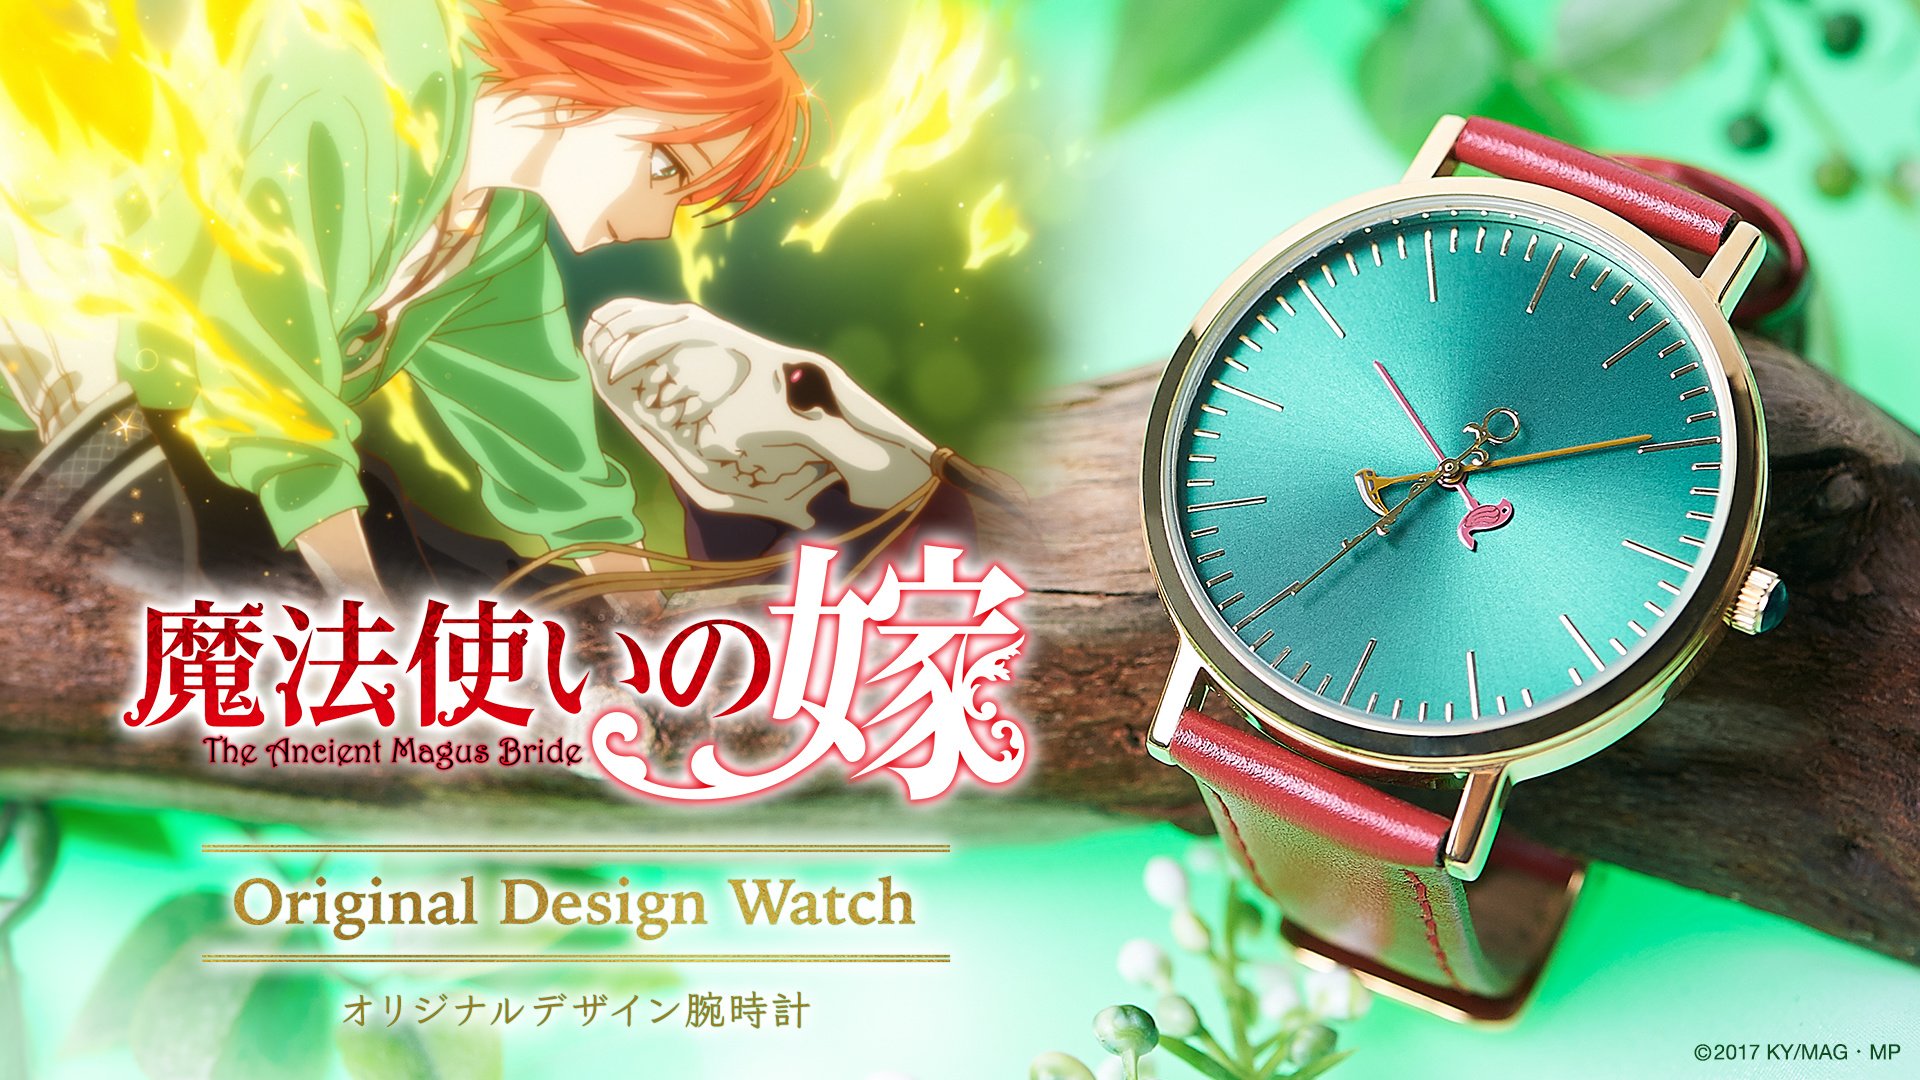 ただいま エリアス チセとエリアスが寄り添う腕時計 魔法使いの嫁 オリジナルデザインウォッチ予約開始 Tokyo Otaku Mode Inc 日本支店のプレスリリース